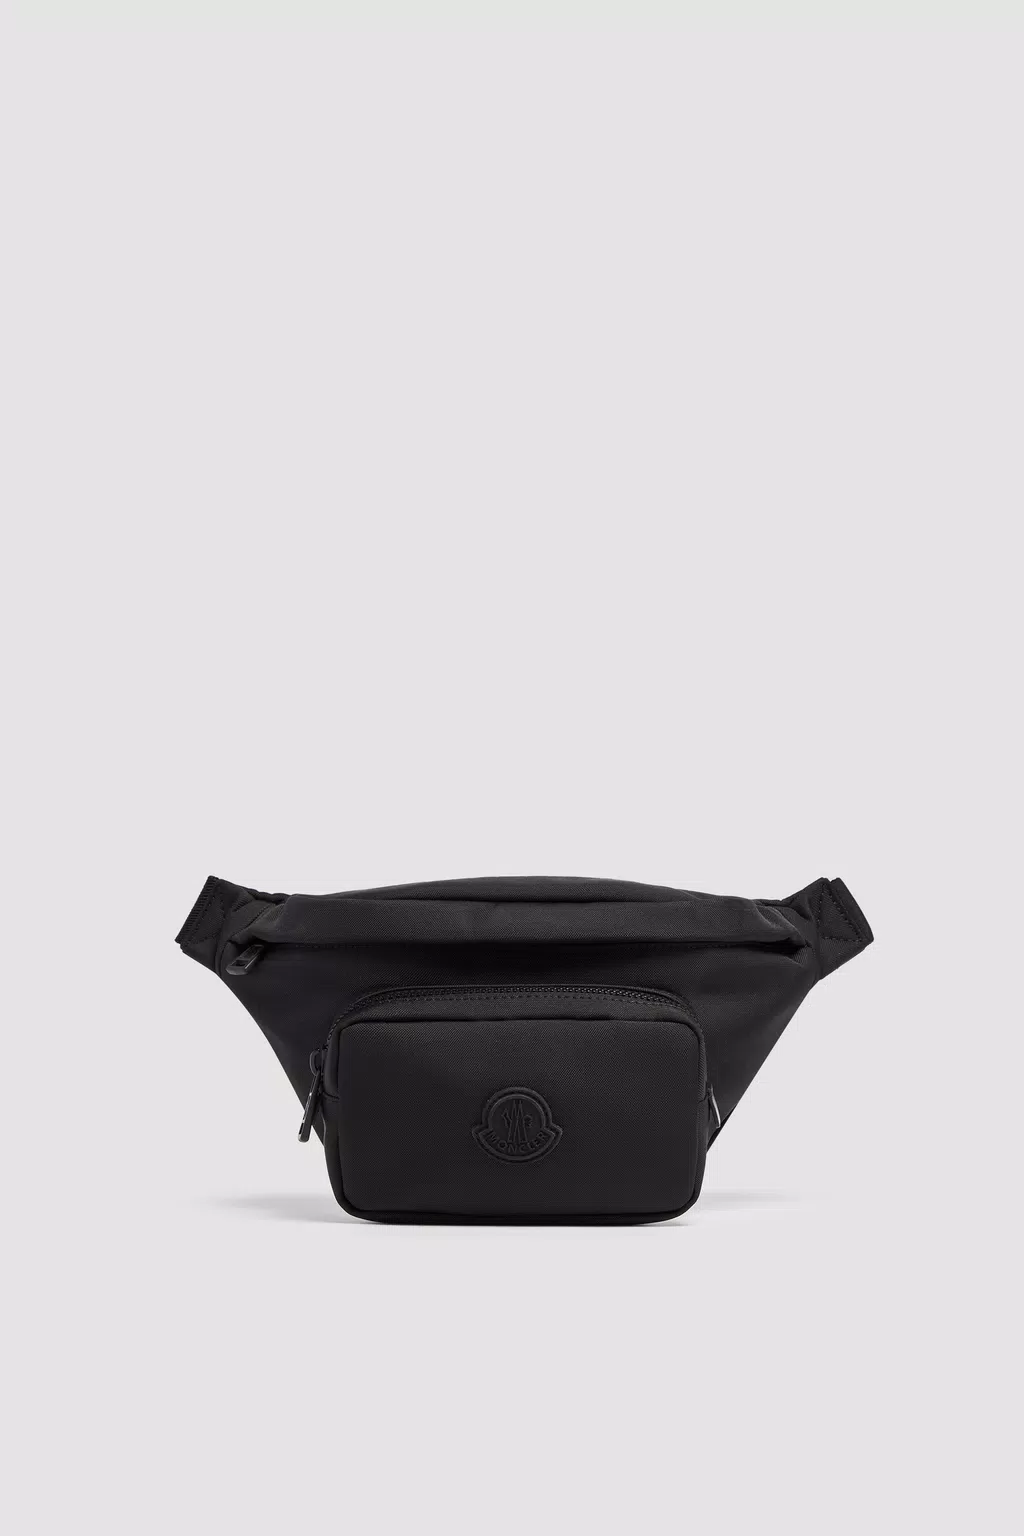 Durance Belt Bag Black Moncler 1